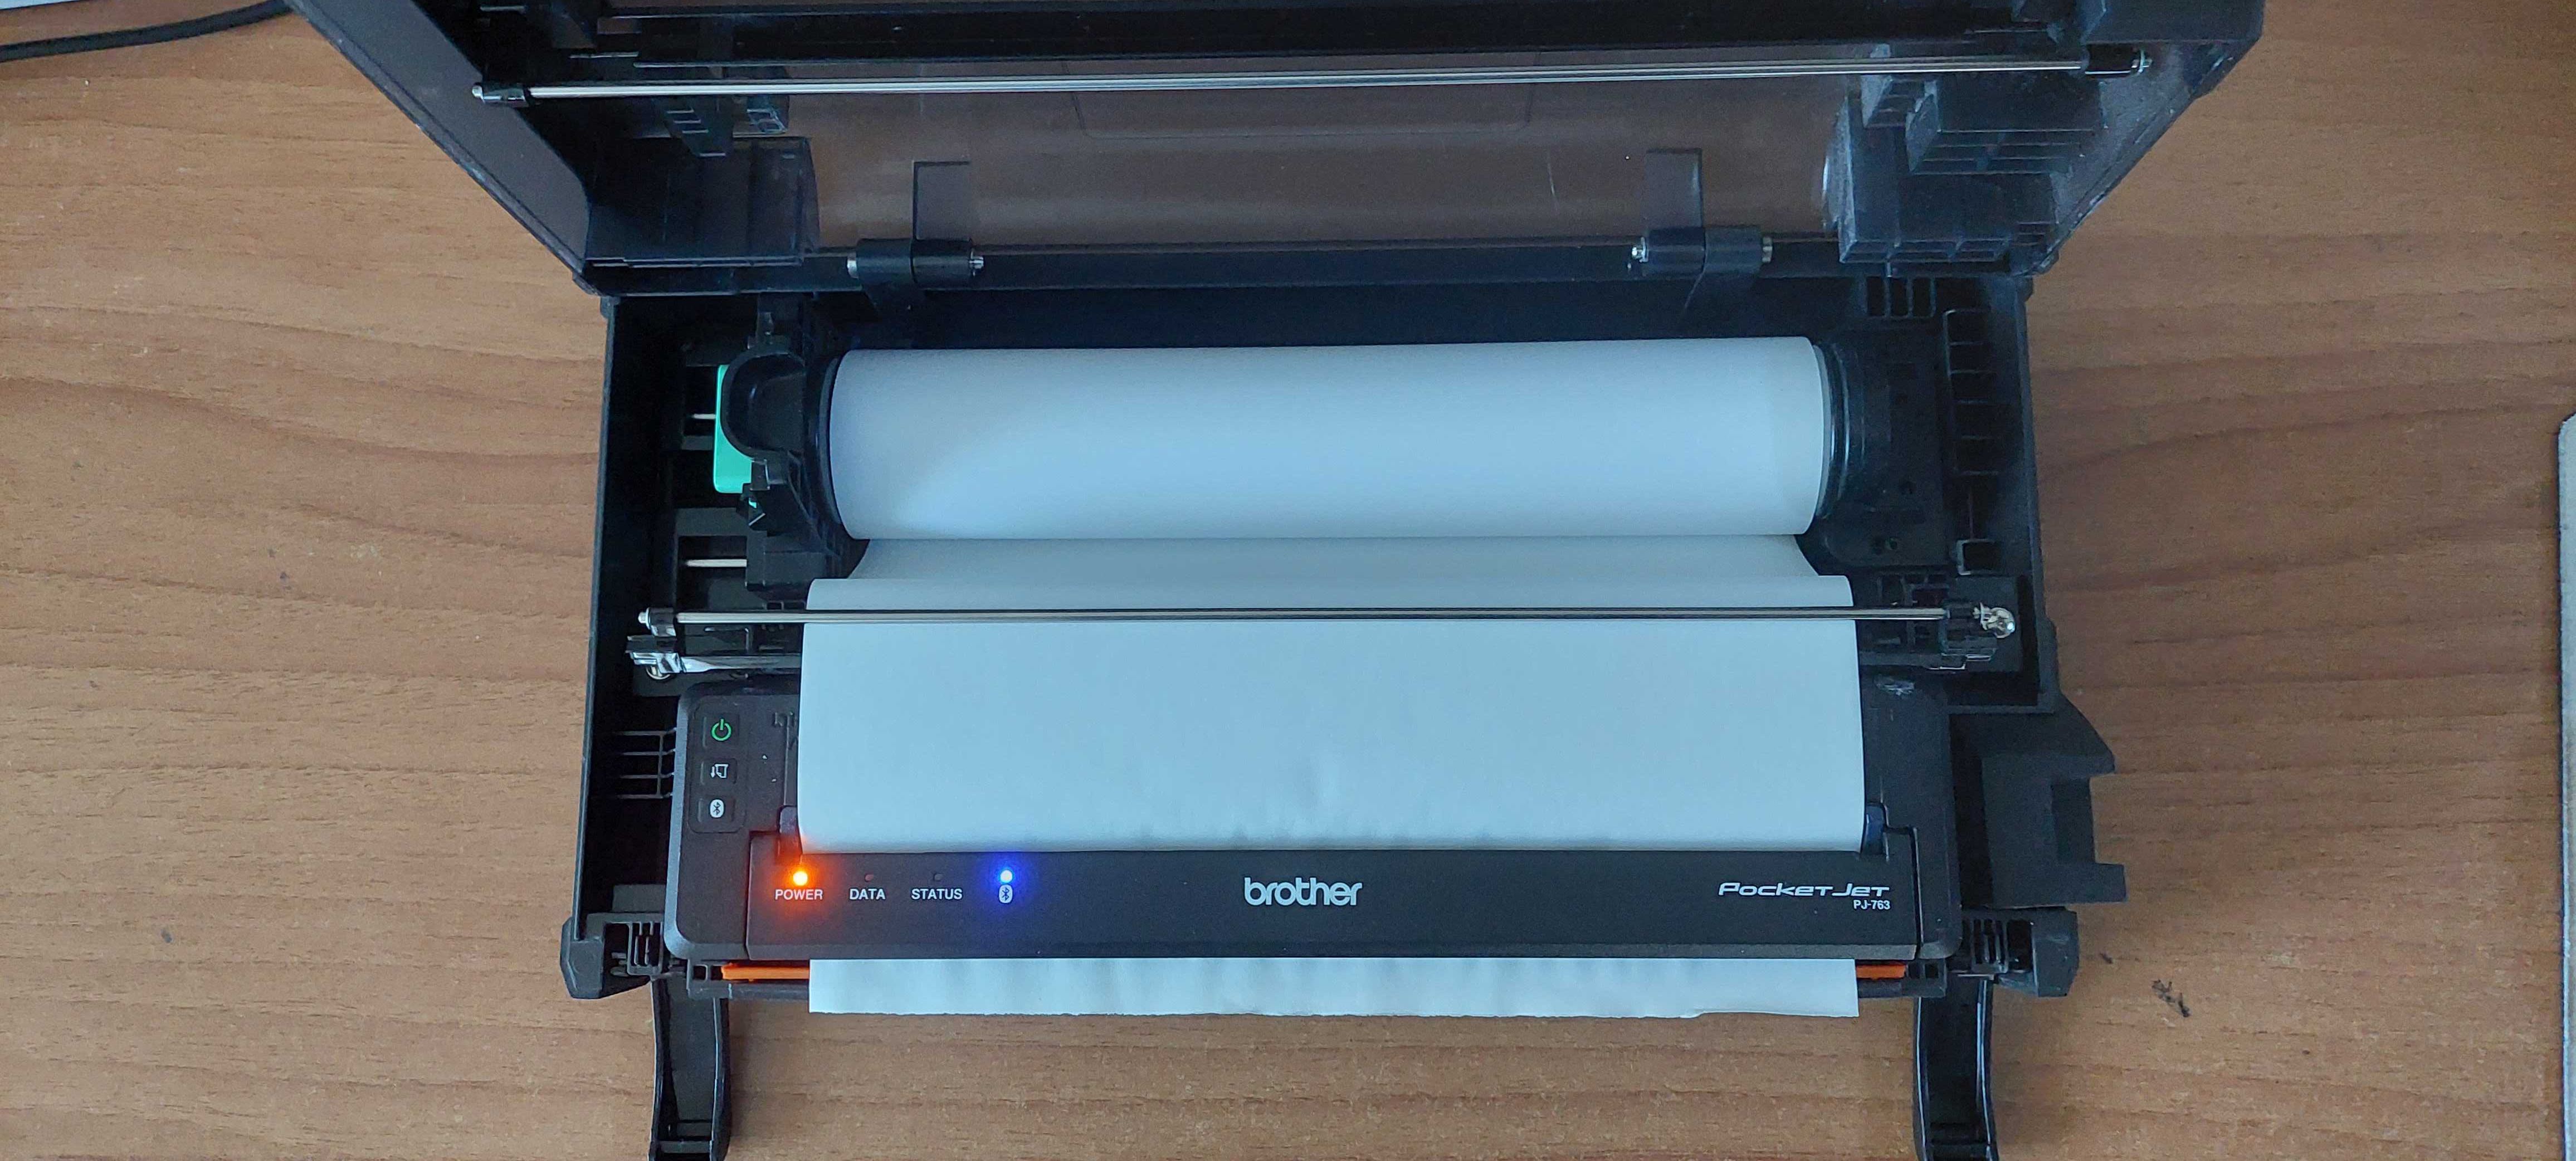 Imprimantă portabila Brother Pj763,Termica, Monocrom, Format A4